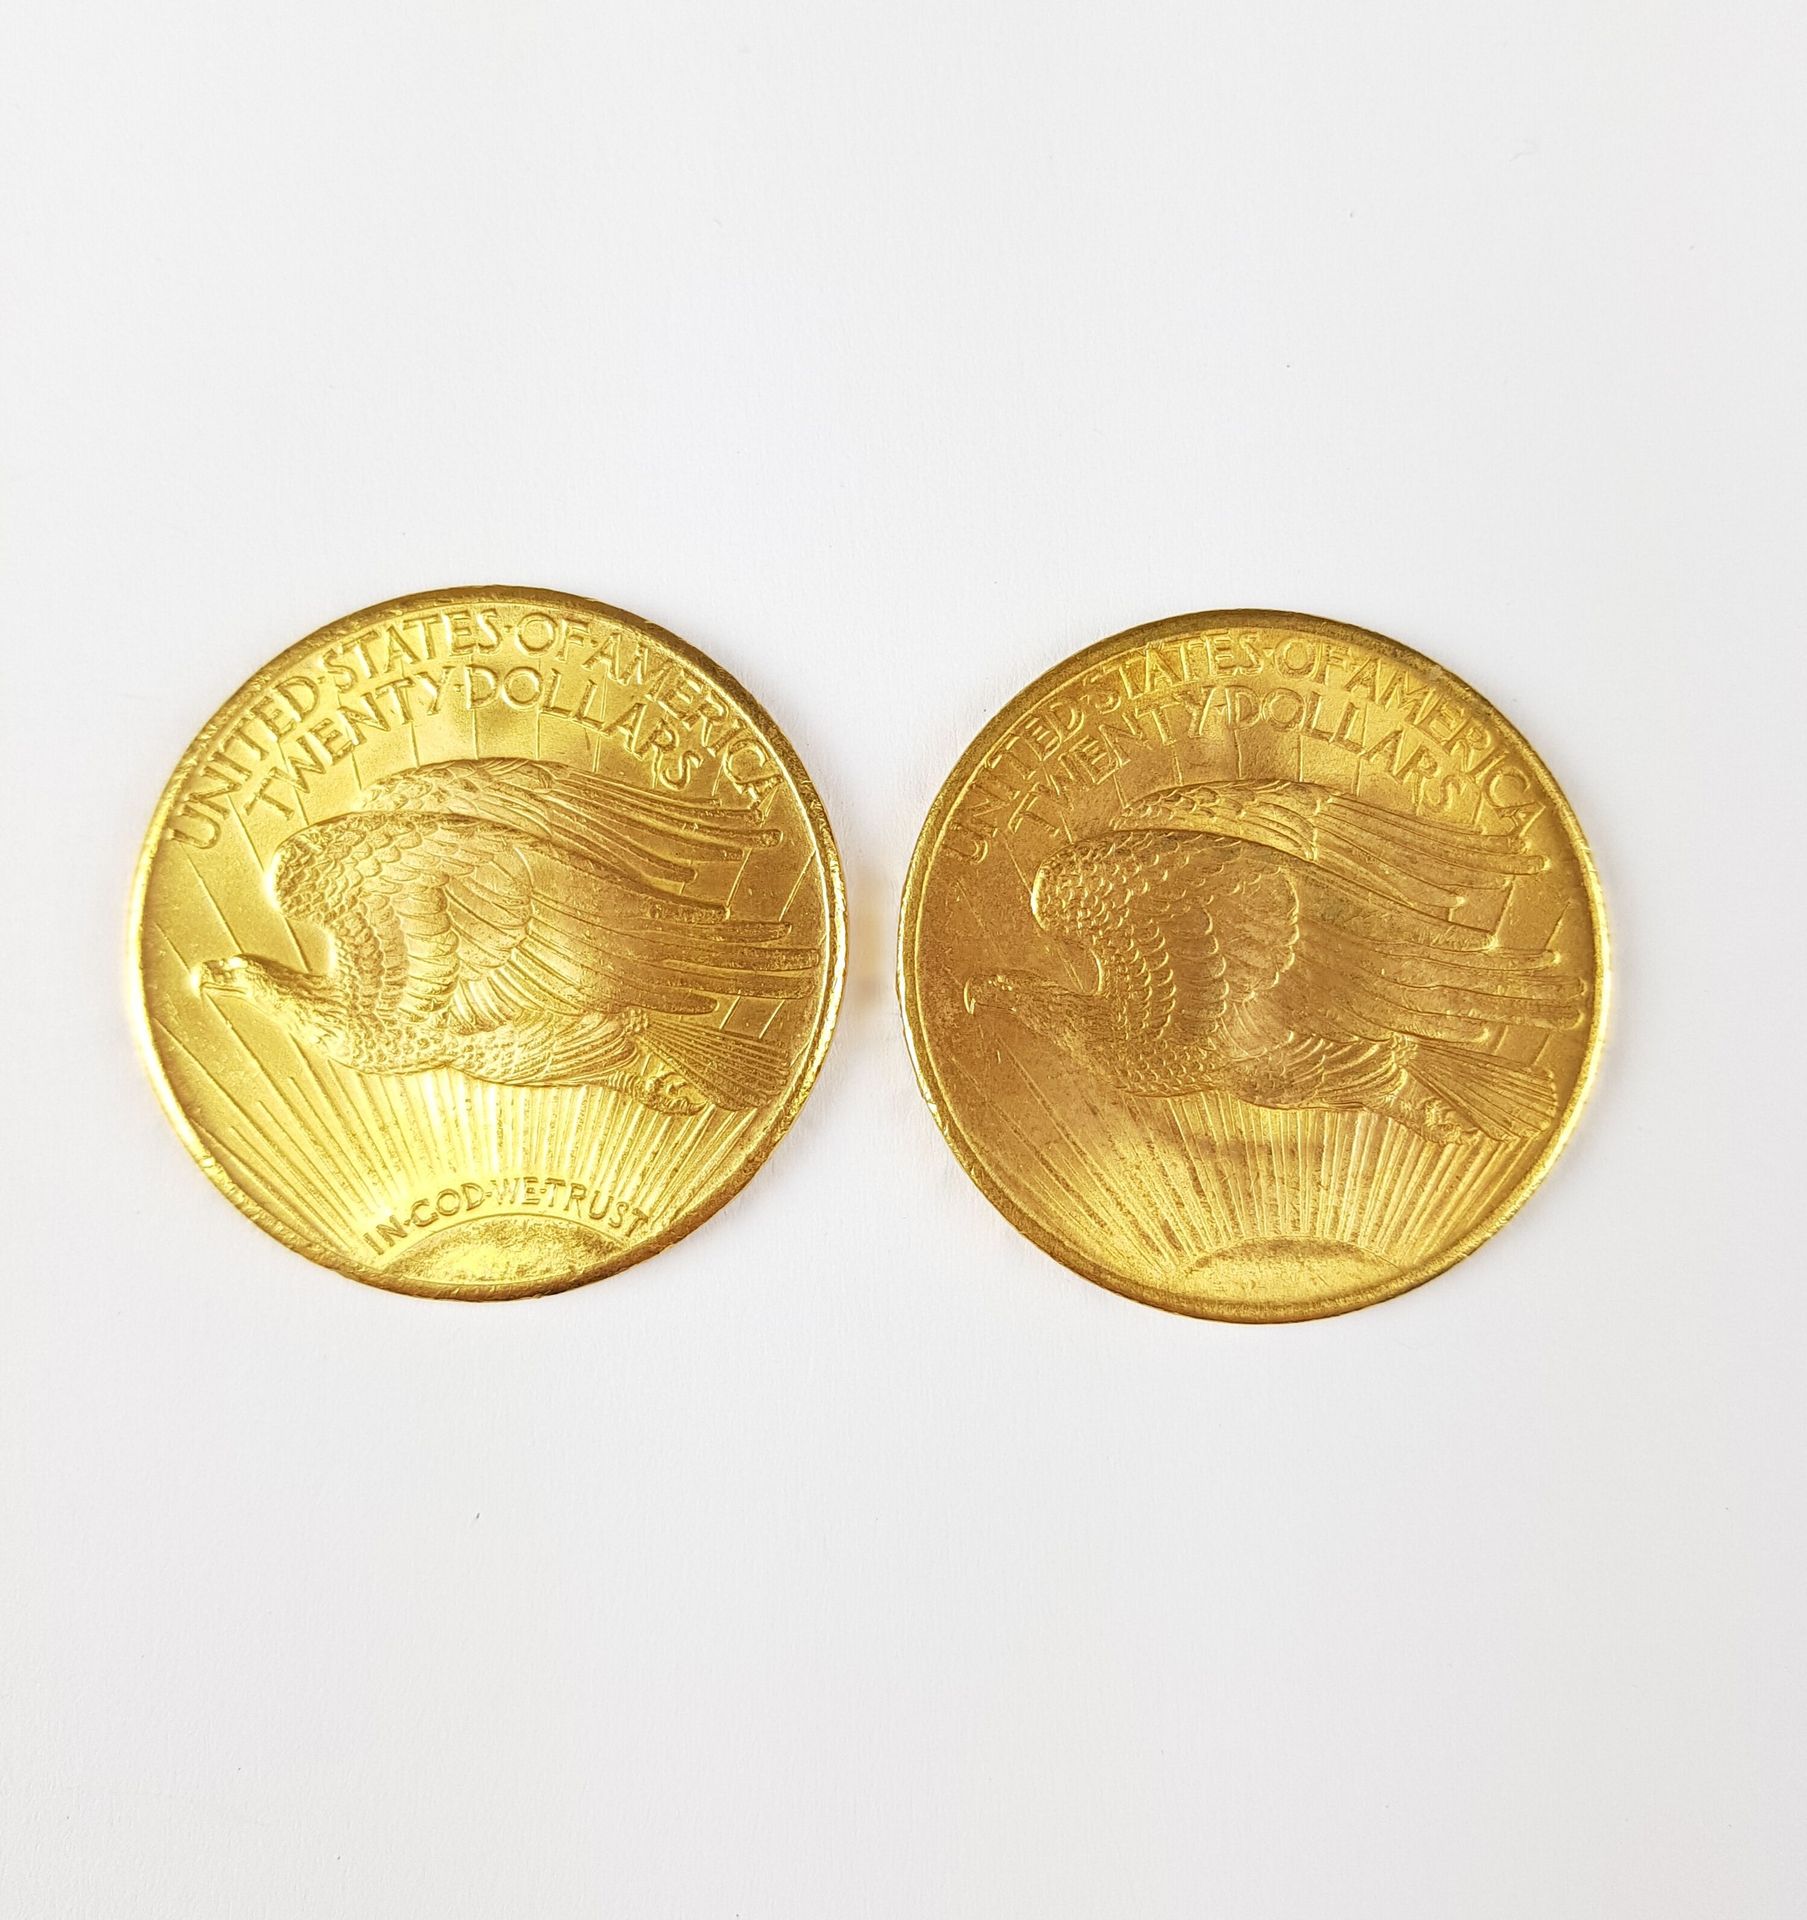 Null DUE monete d'oro da 20 dollari, 1908 e 1927
Peso totale: 66,95 g